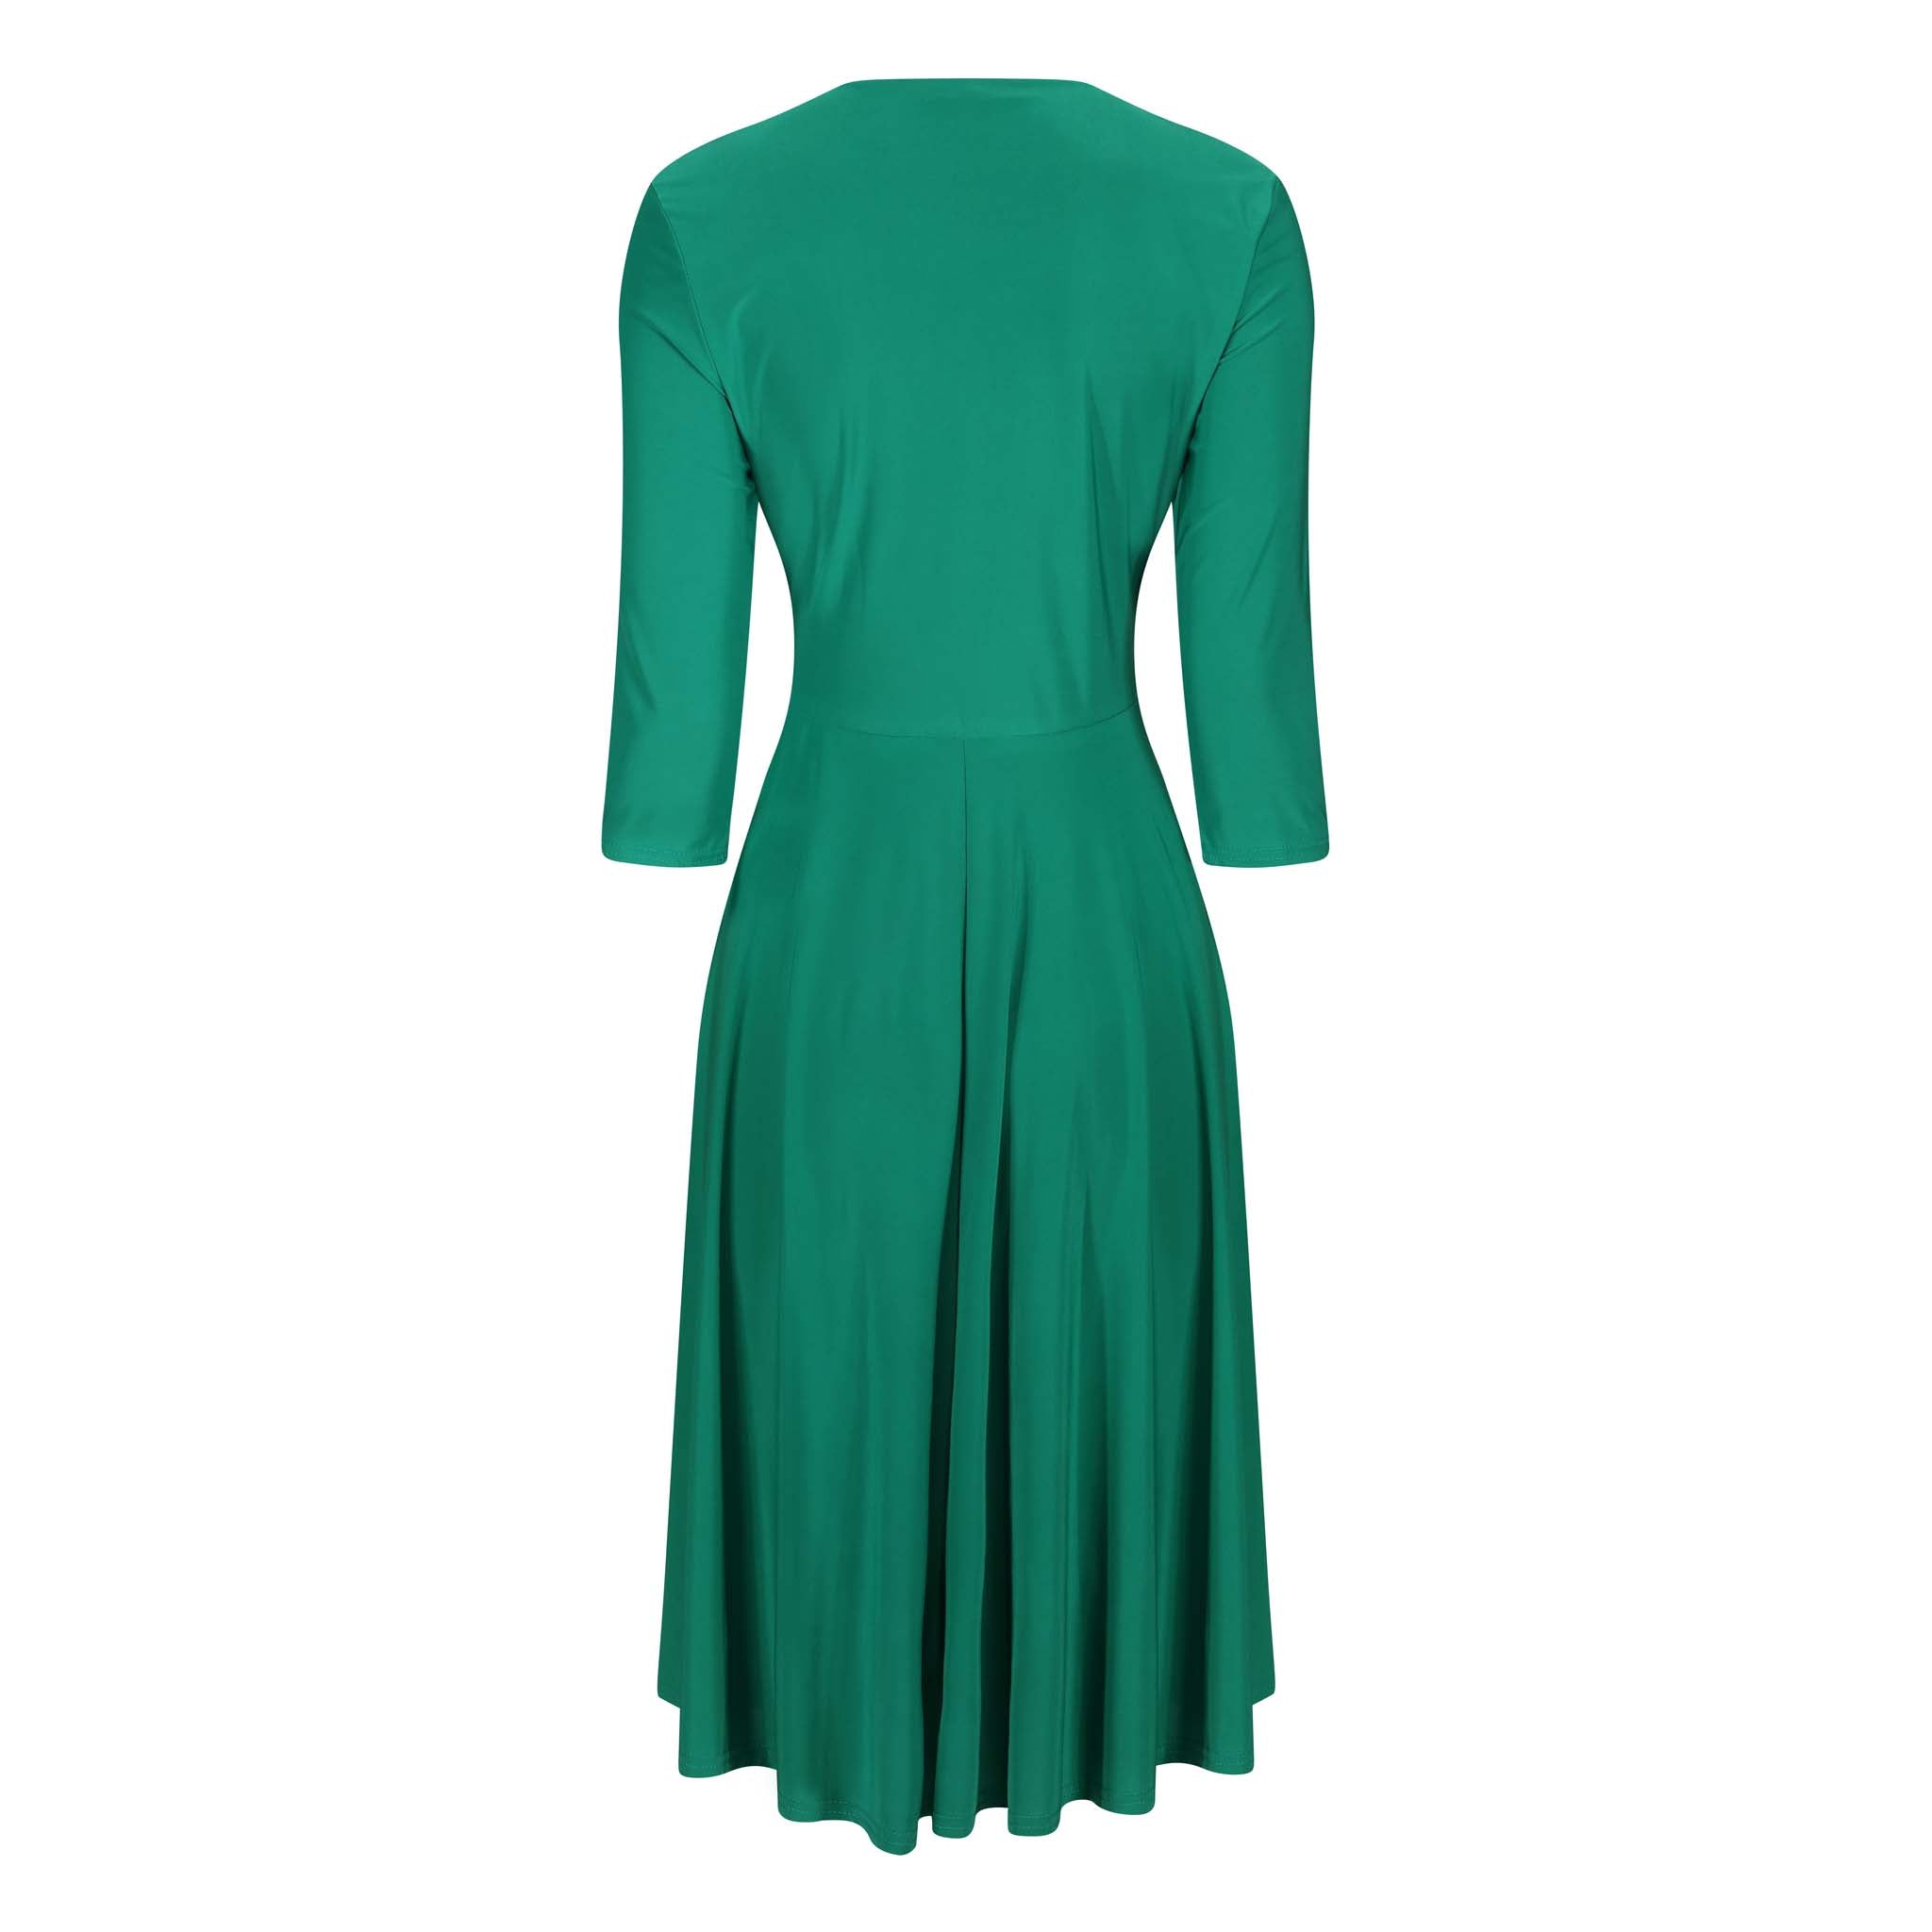 Emerald Green Crossover 3/4 Sleeve Rockabilly 50s Swing Dress – Pretty ...